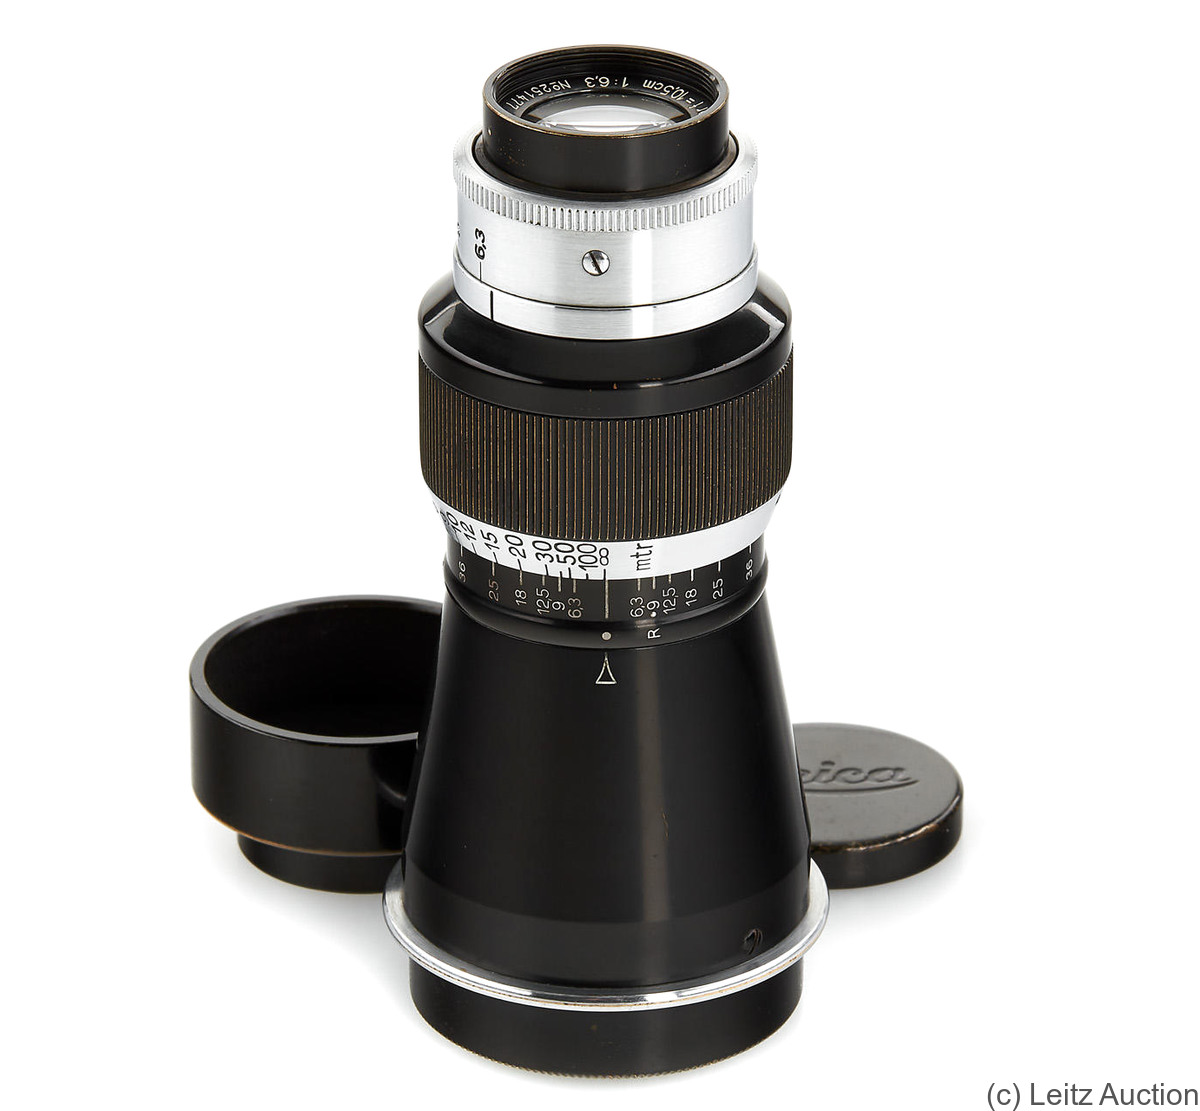 Leitz: 105mm (10.5cm) f6.3 Elmar (SM, black/chrome) camera